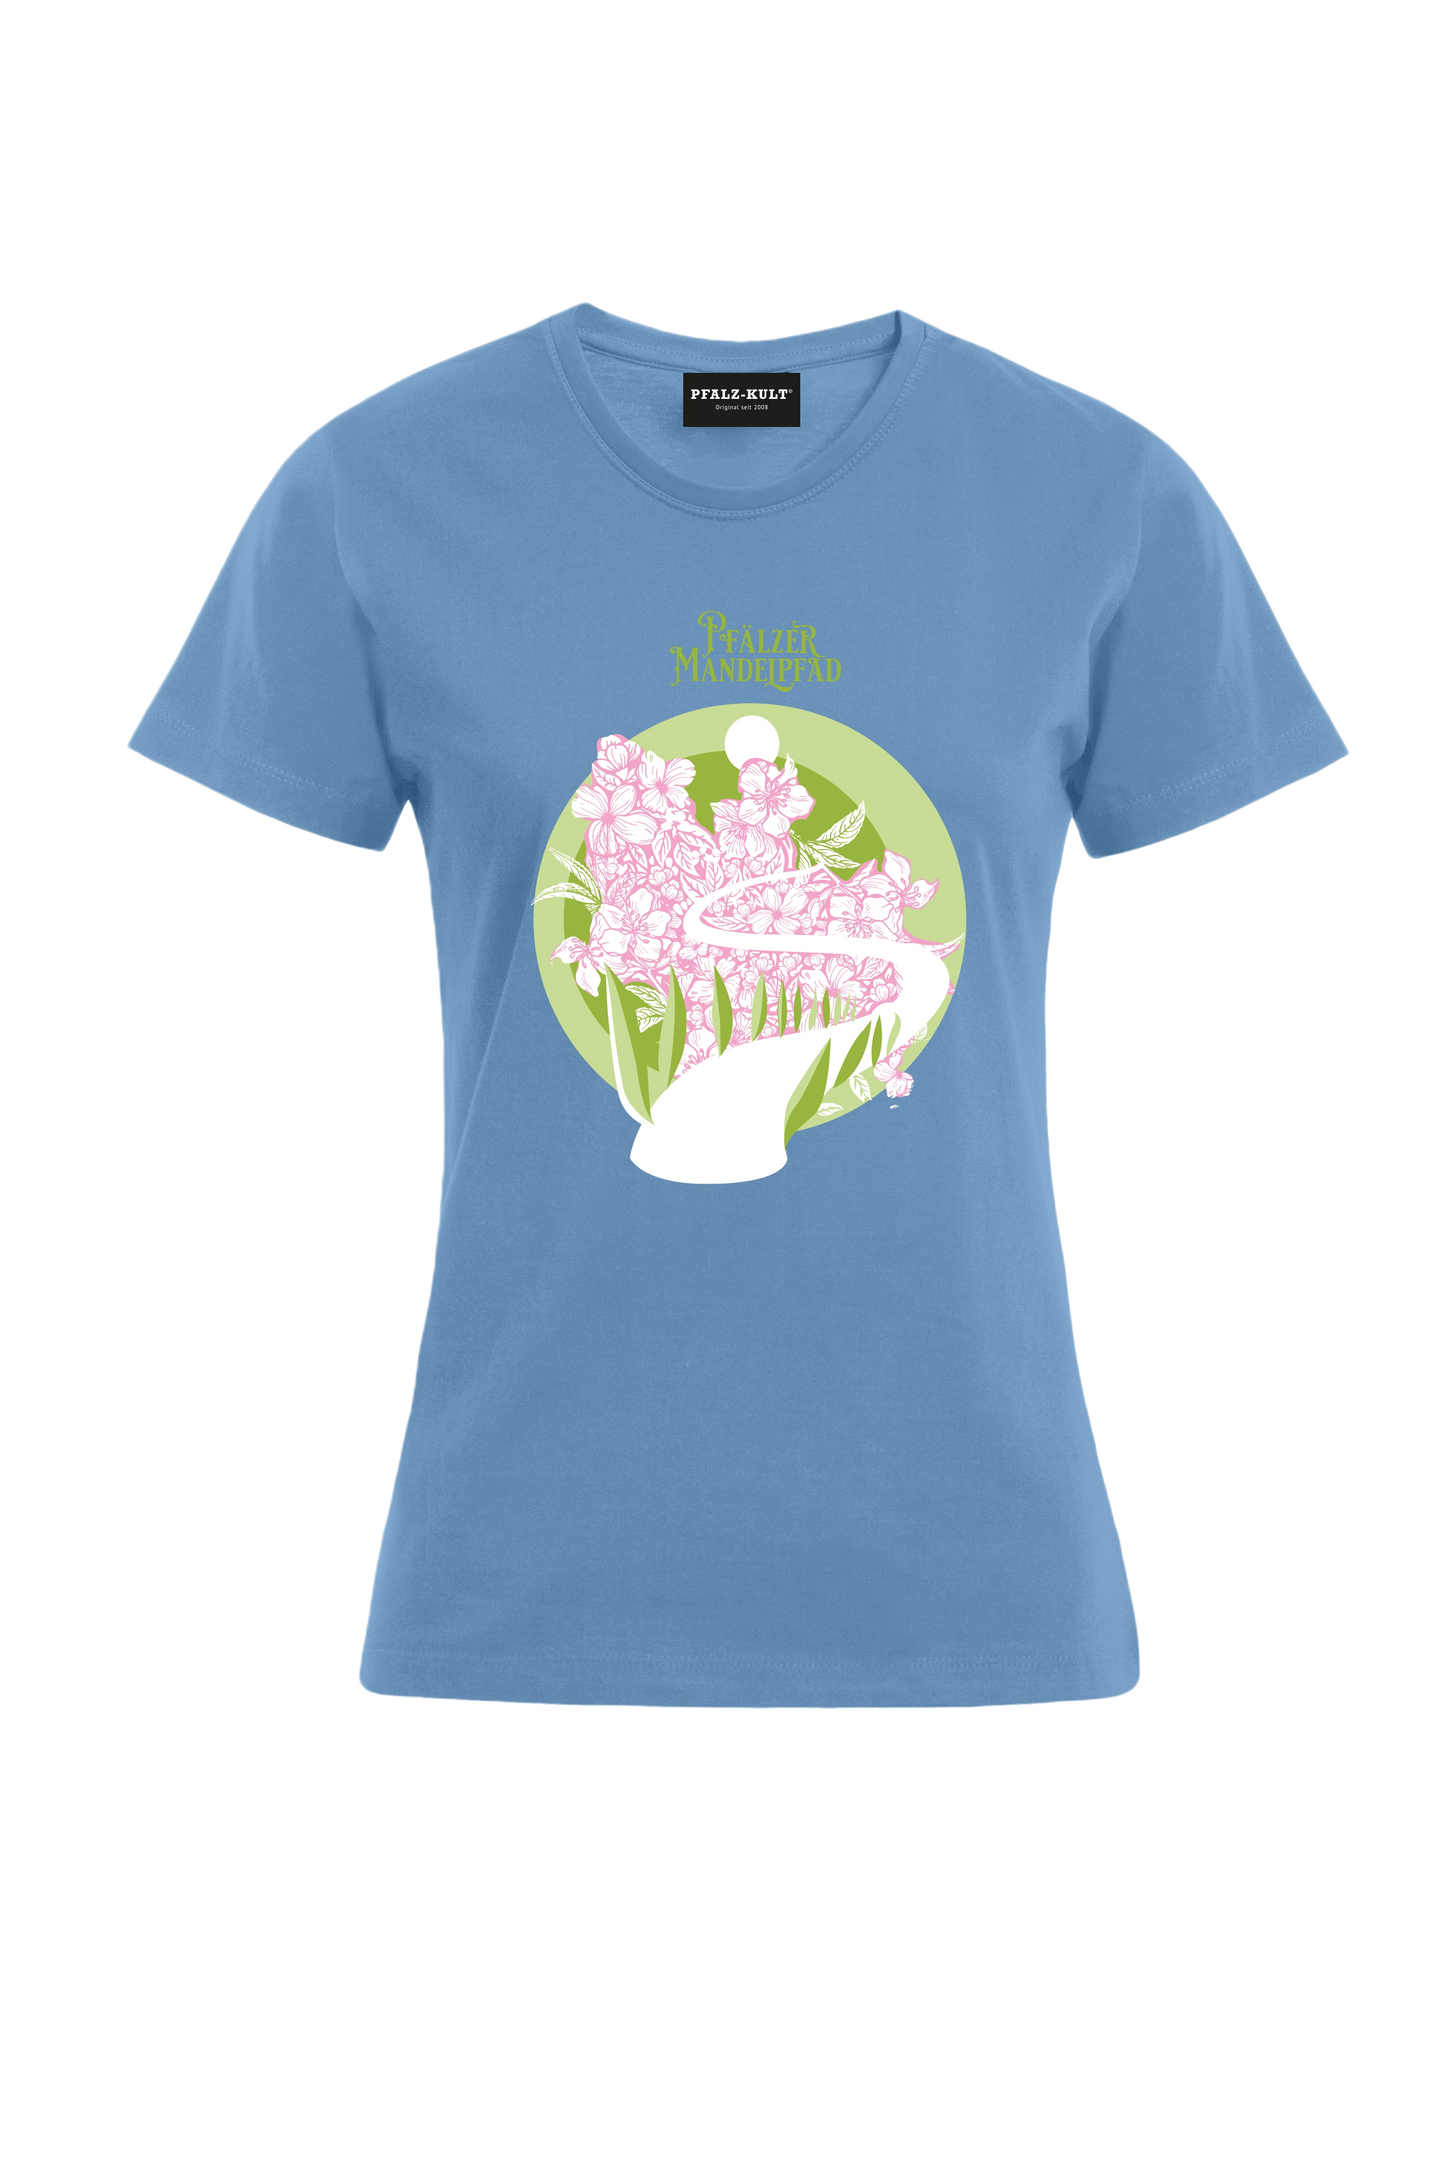 Mandelblütenpfad I - Frauen T-Shirt